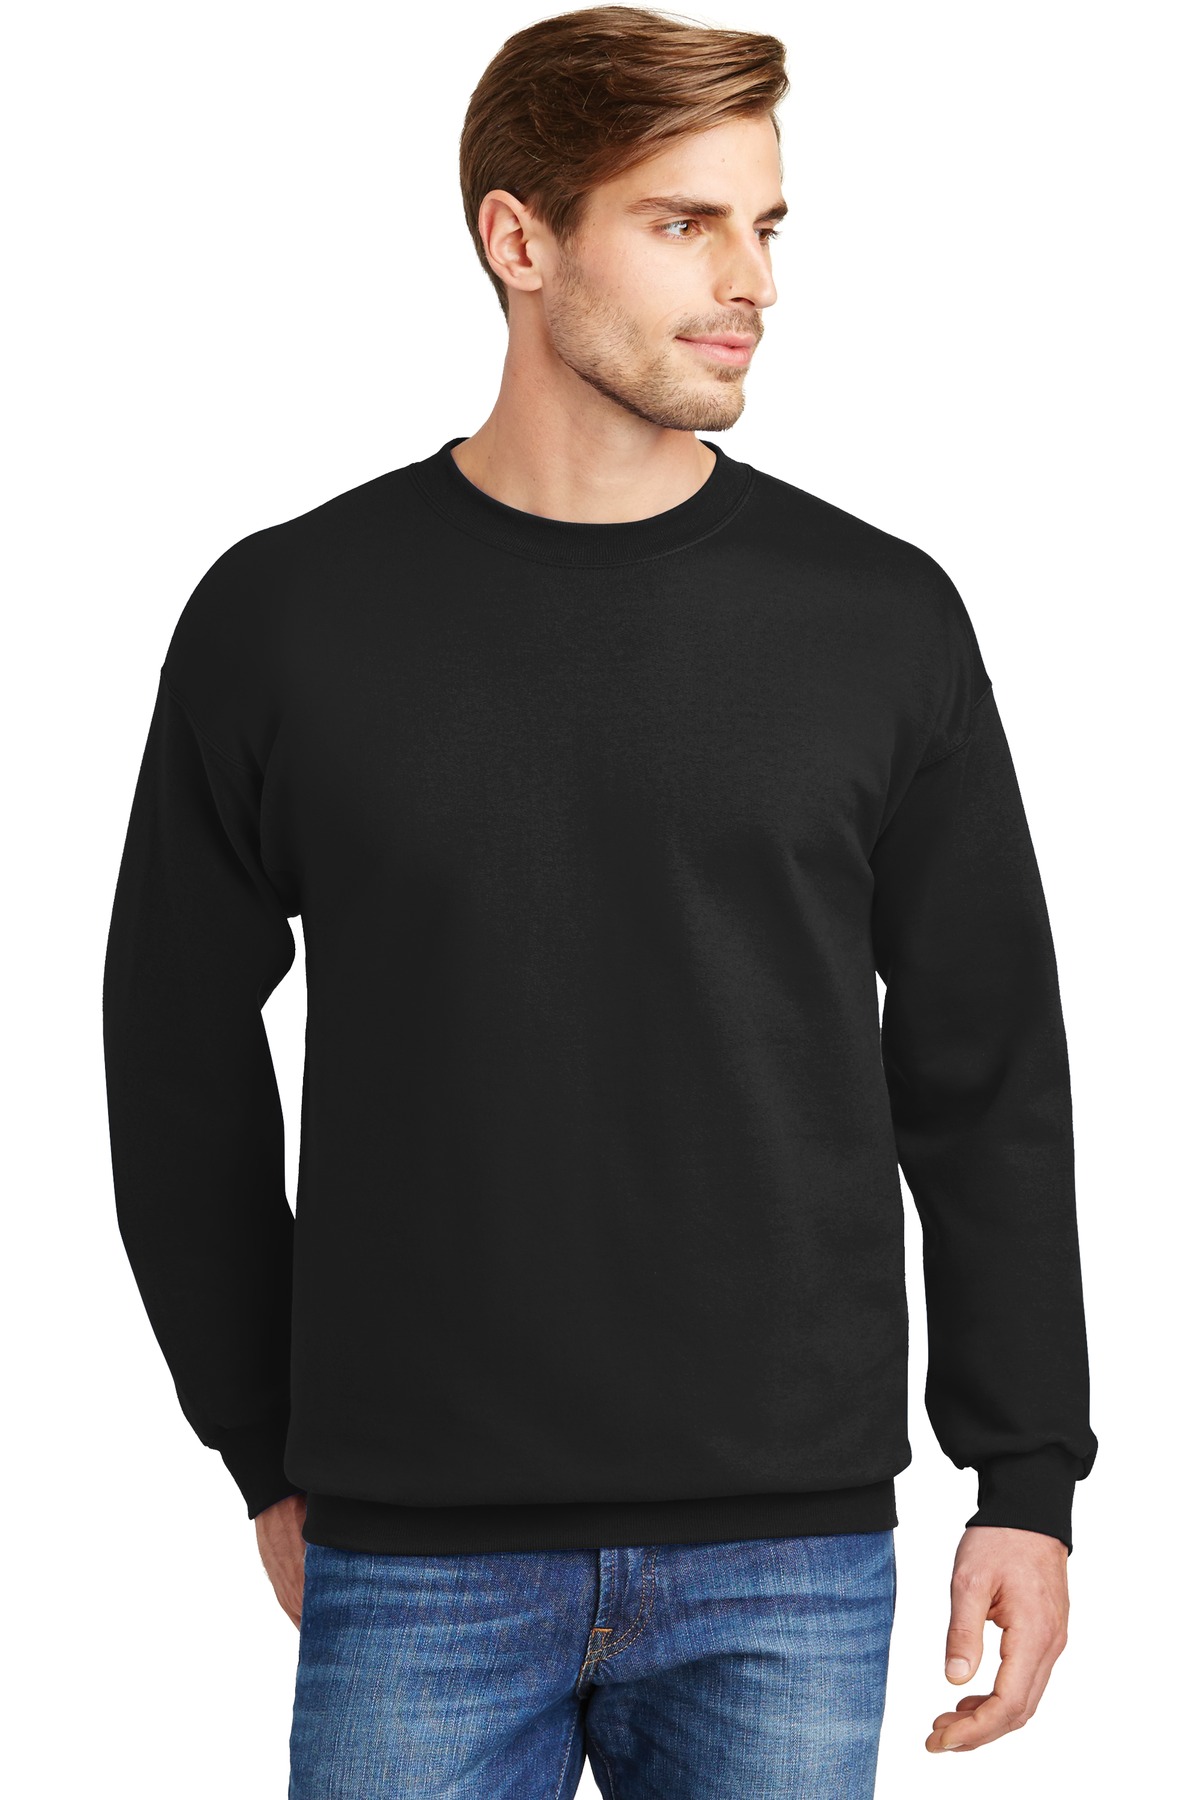 Buy Hanes® Ultimate Cotton® - Crewneck Sweatshirt. - Online at Best ...